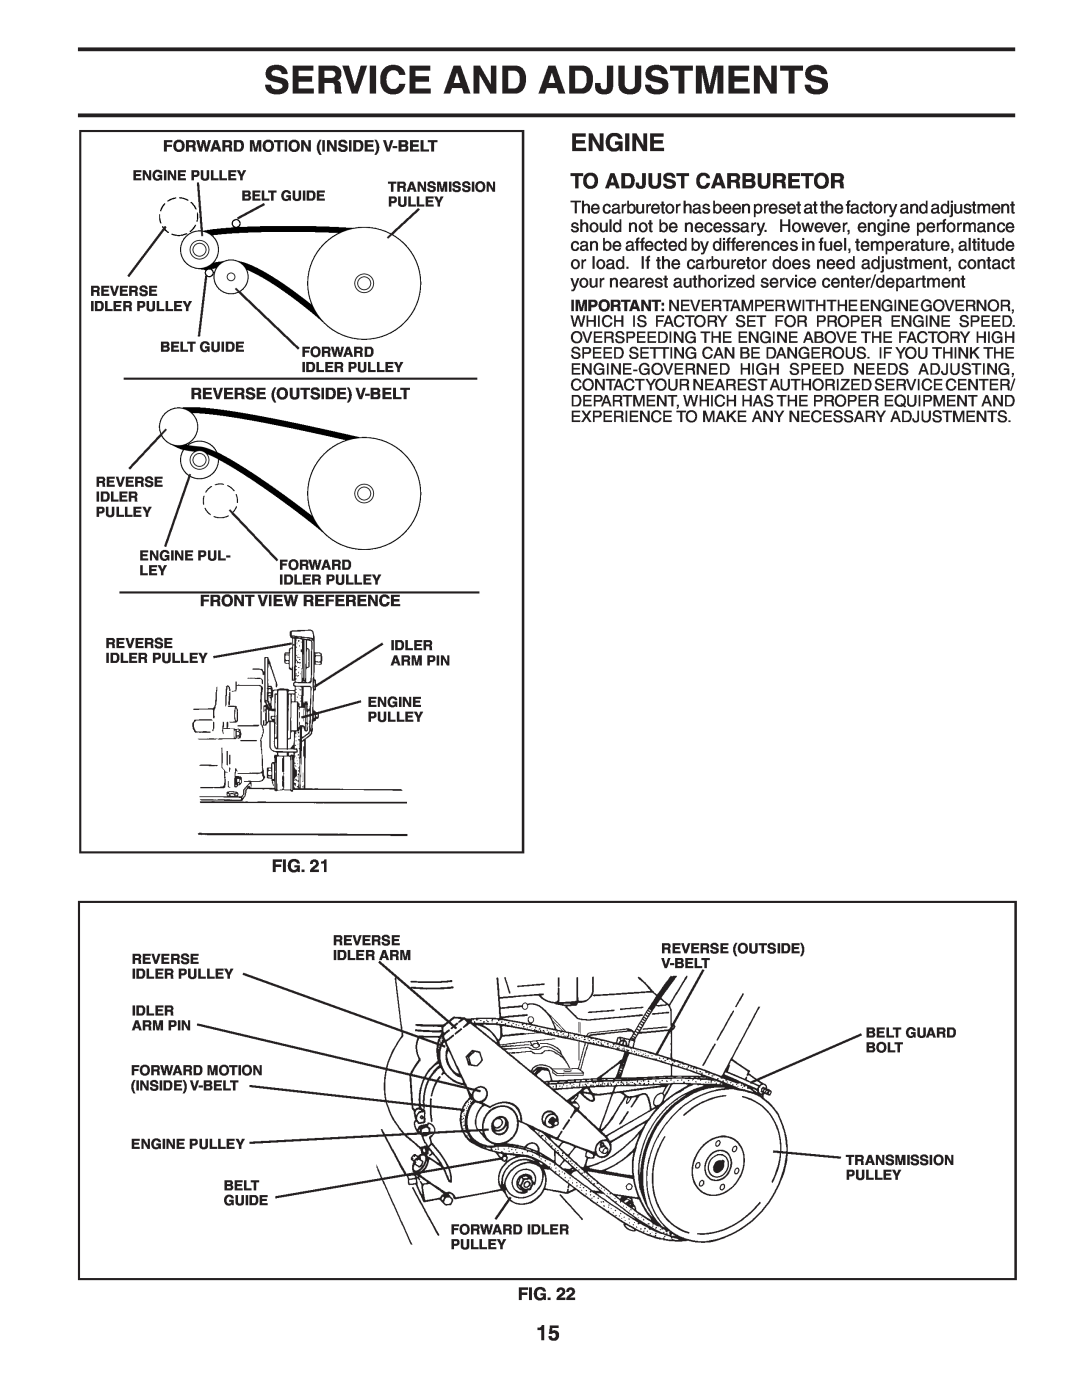 Poulan HDF550L owner manual To Adjust Carburetor, Service And Adjustments, Engine 